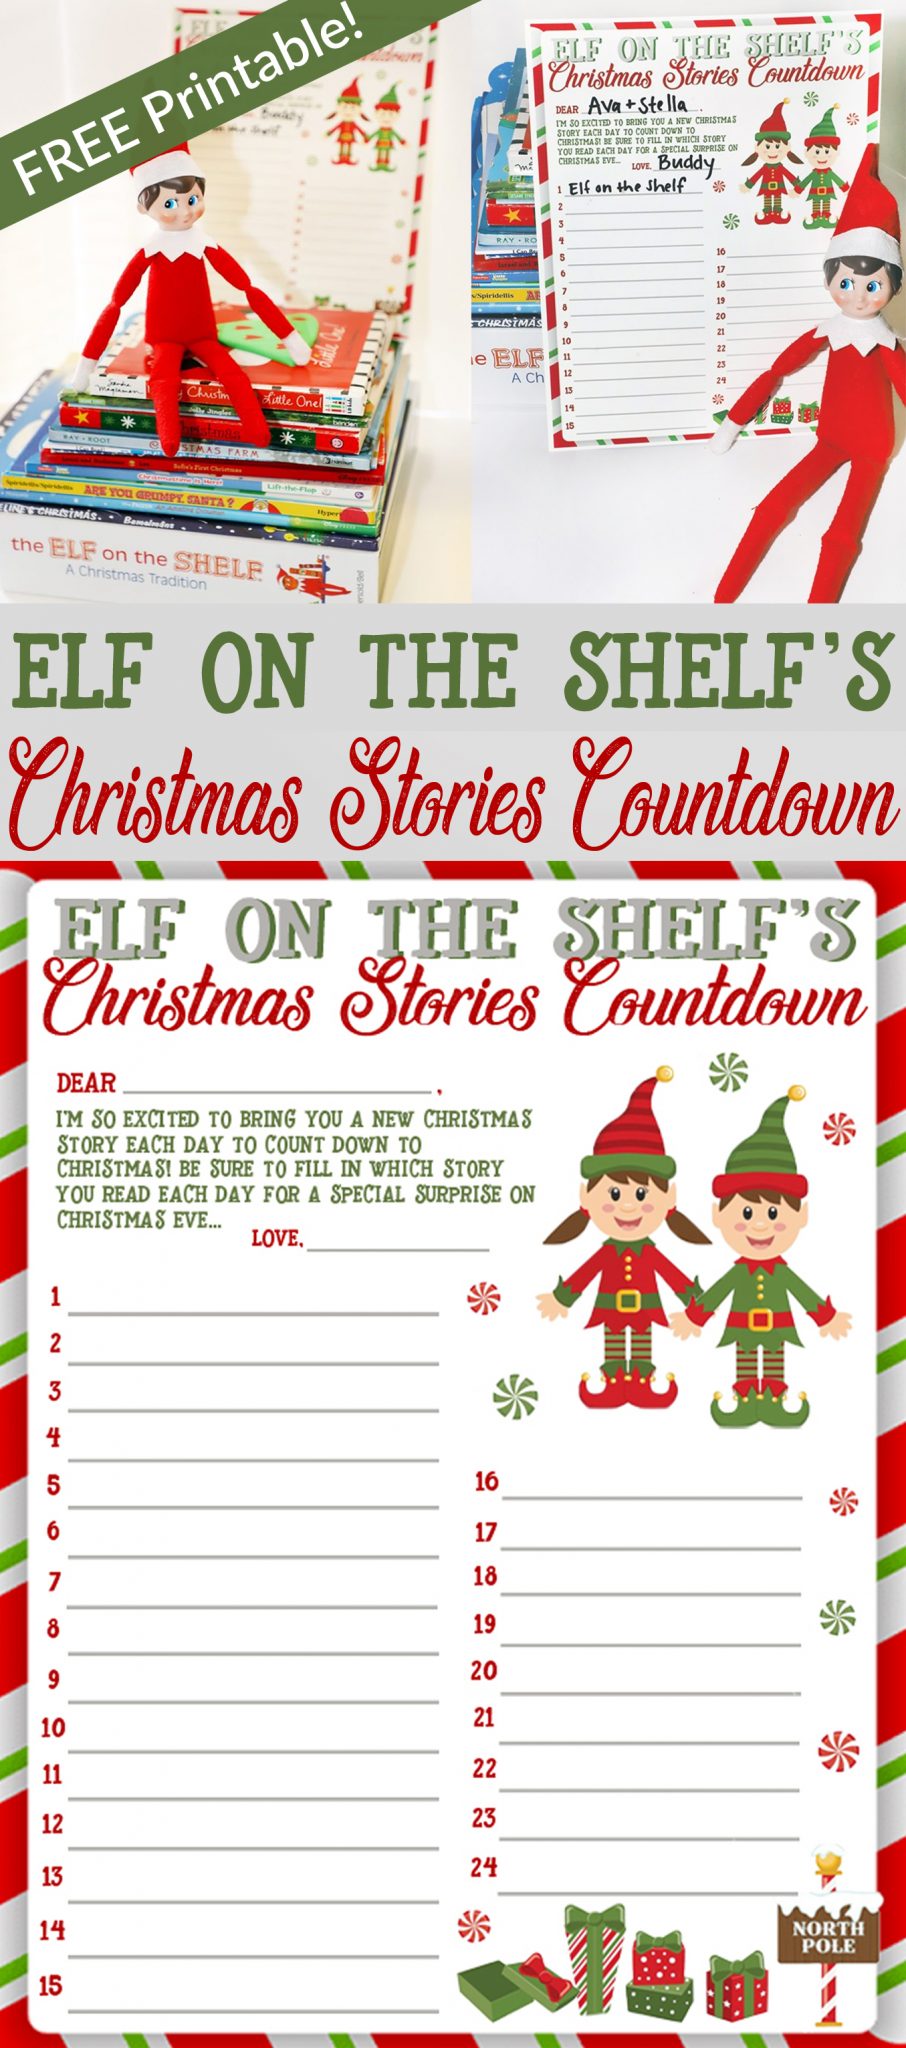 Elf on the Shelf Christmas Stories Countdown Printable